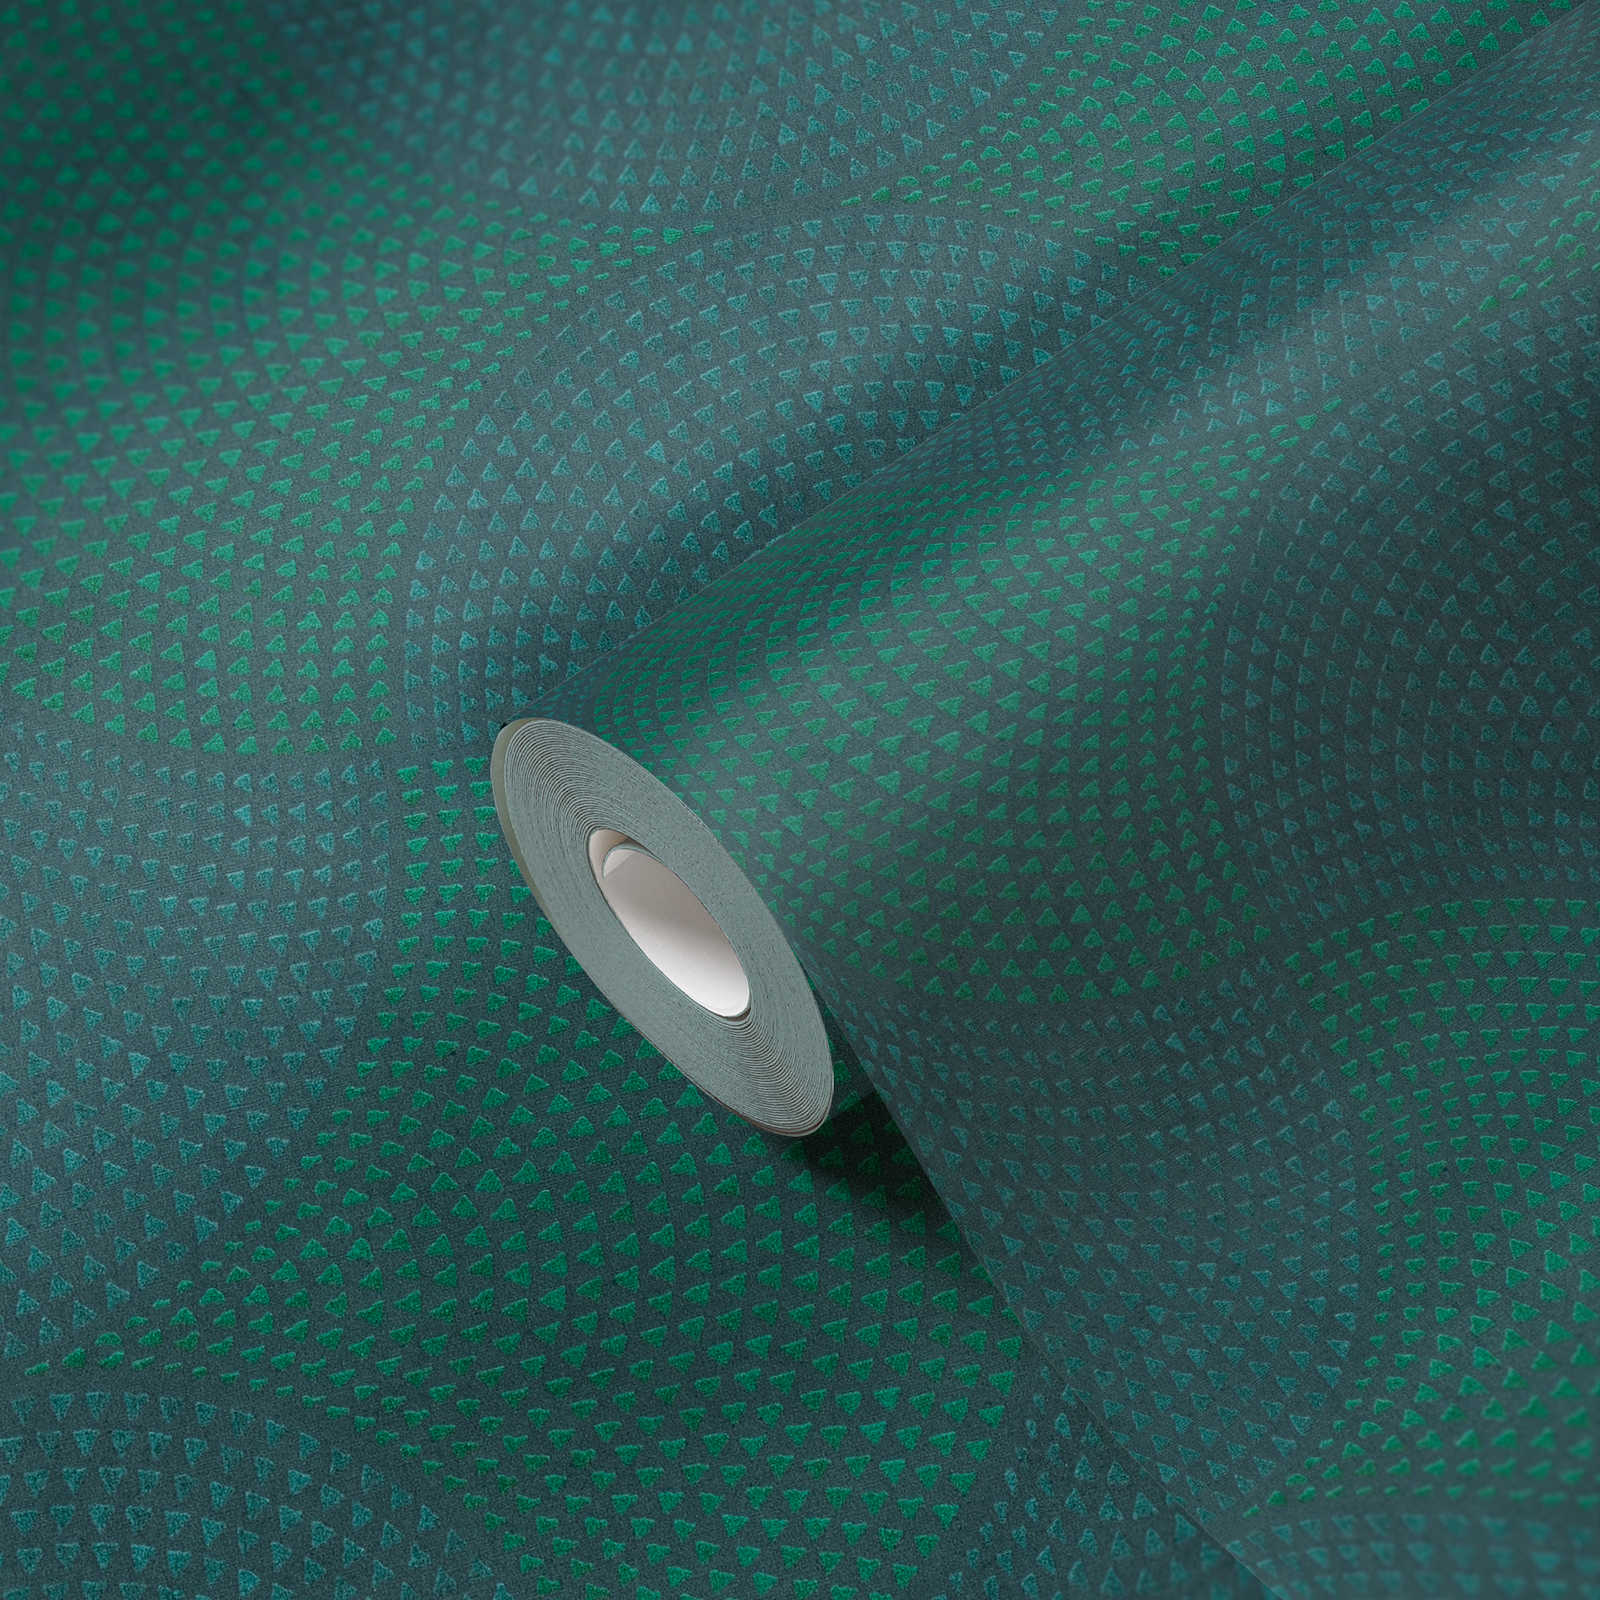             Papier peint intissé Design métallique avec motif mosaïque - bleu, vert, métallique
        